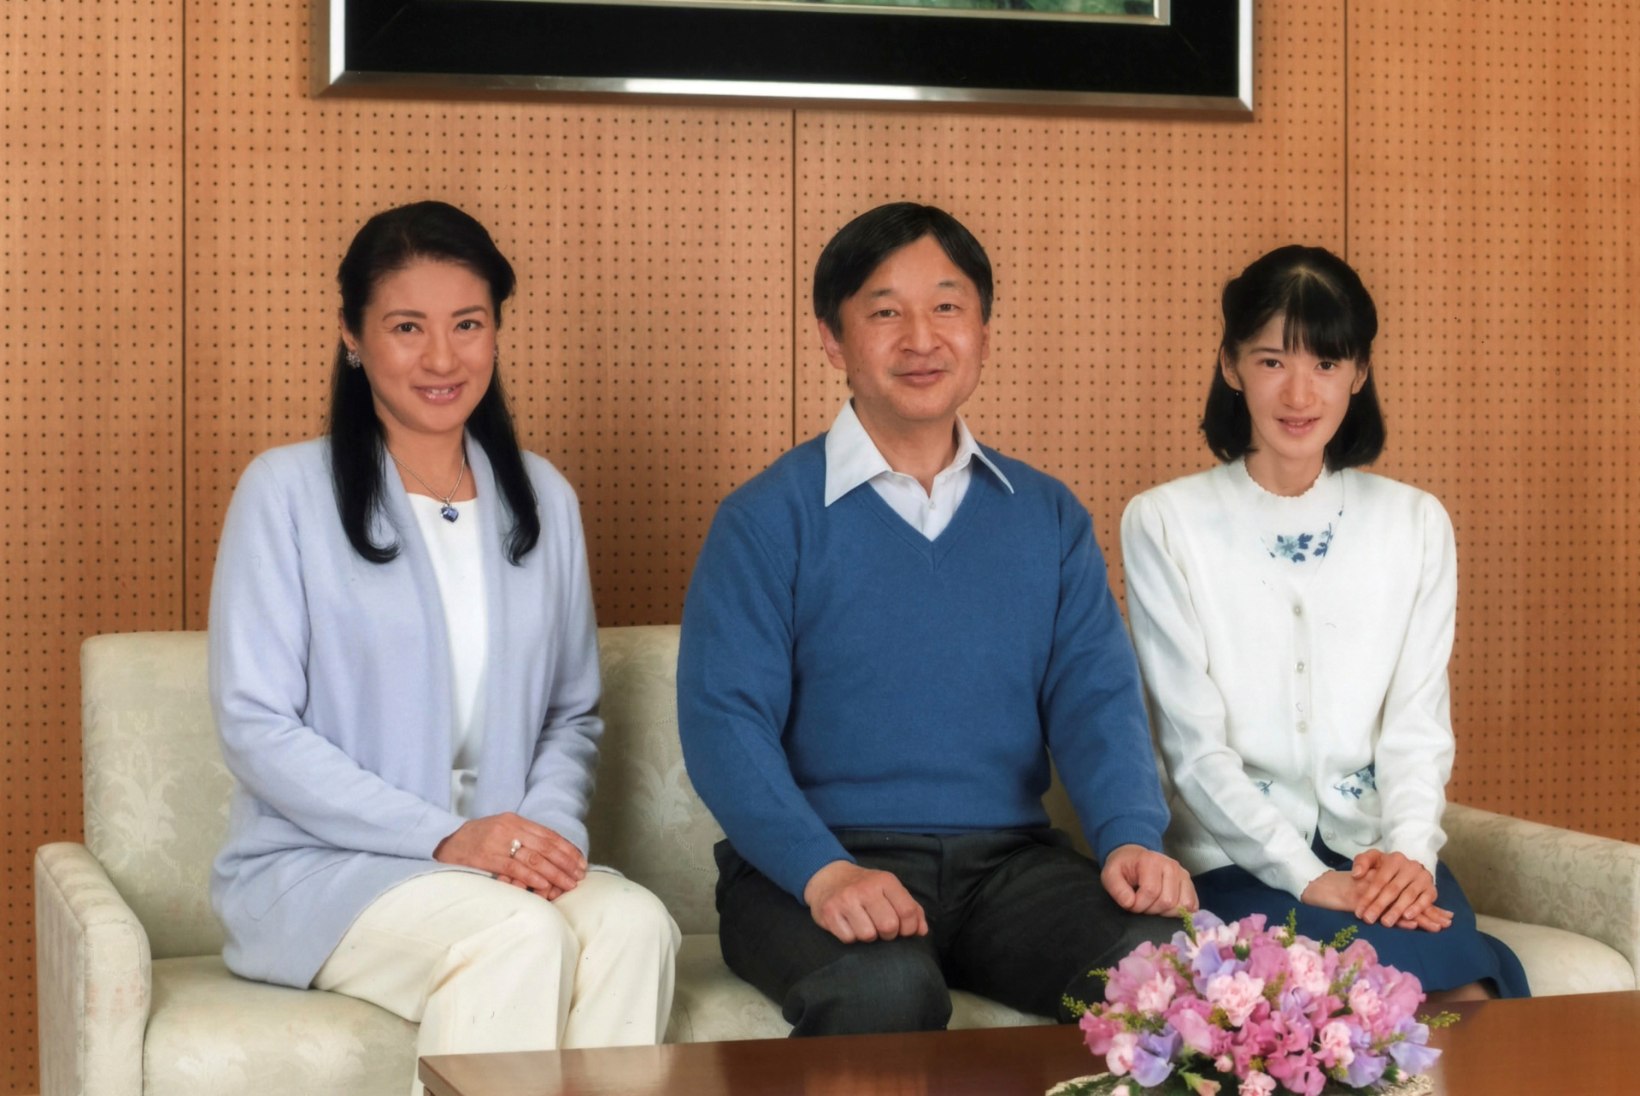 Jaapani printsess ohverdab armastuse nimel koha keiserlikus peres